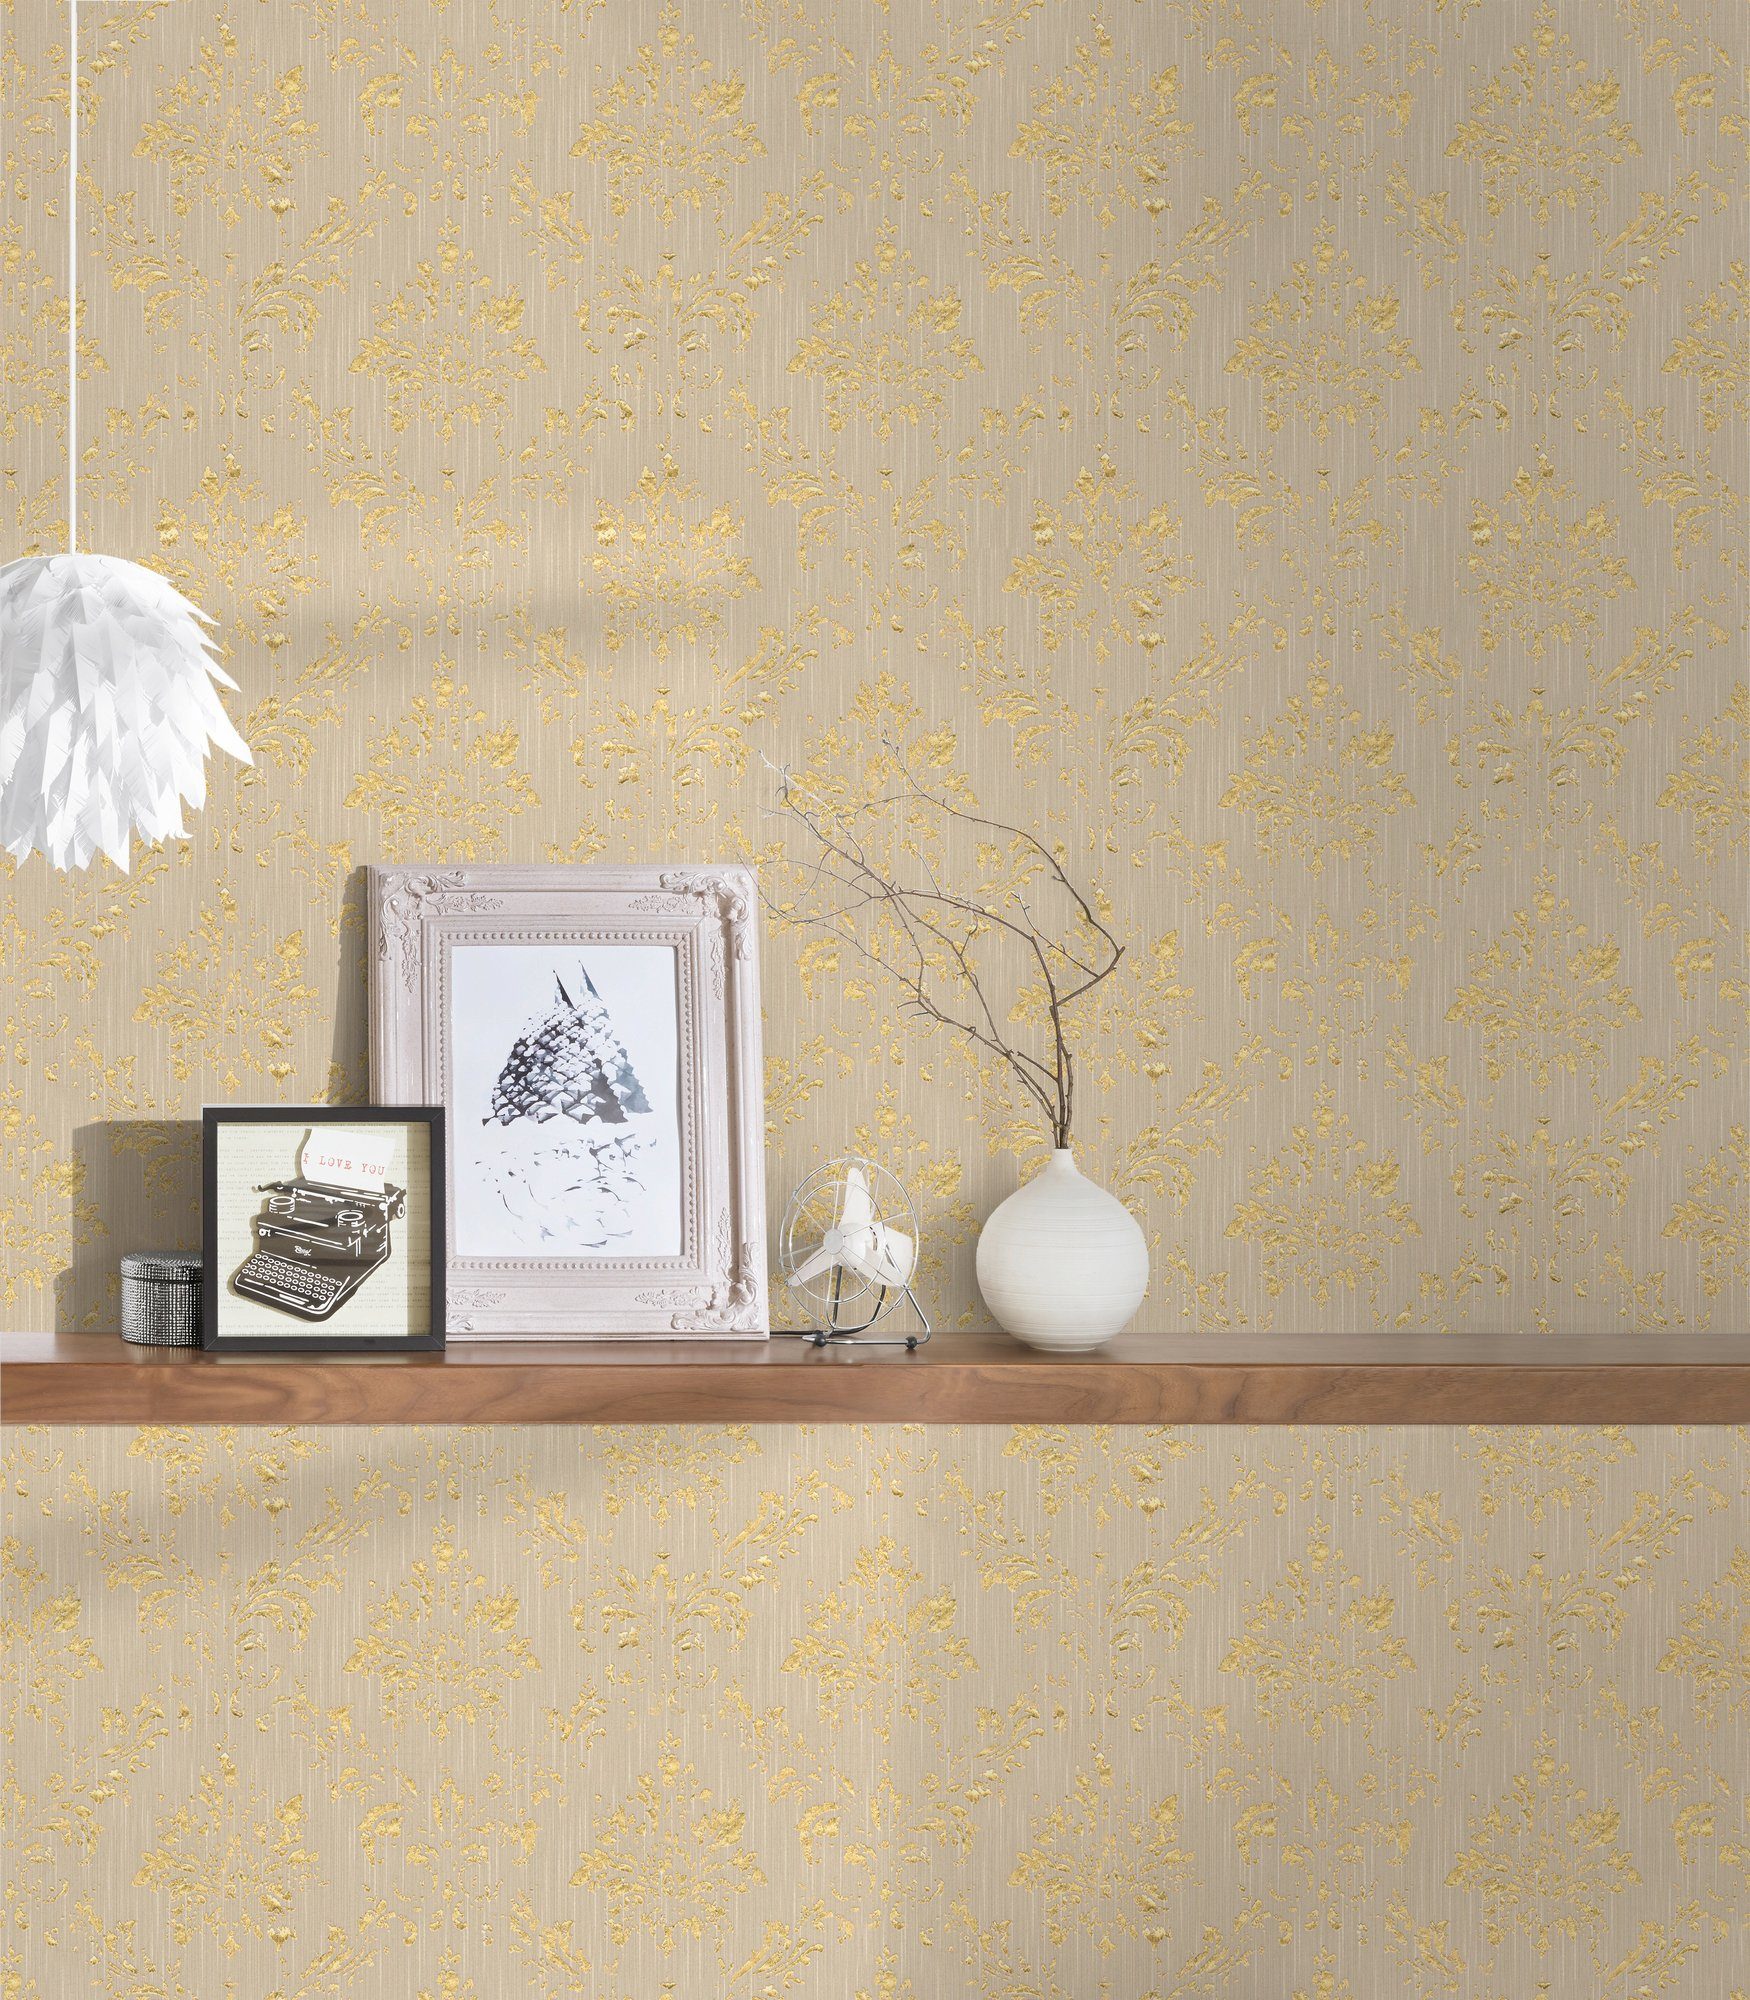 Silk, matt, Tapete Barock Textiltapete Création A.S. Metallic samtig, Paper Barock, Ornament glänzend, beige/gold Architects